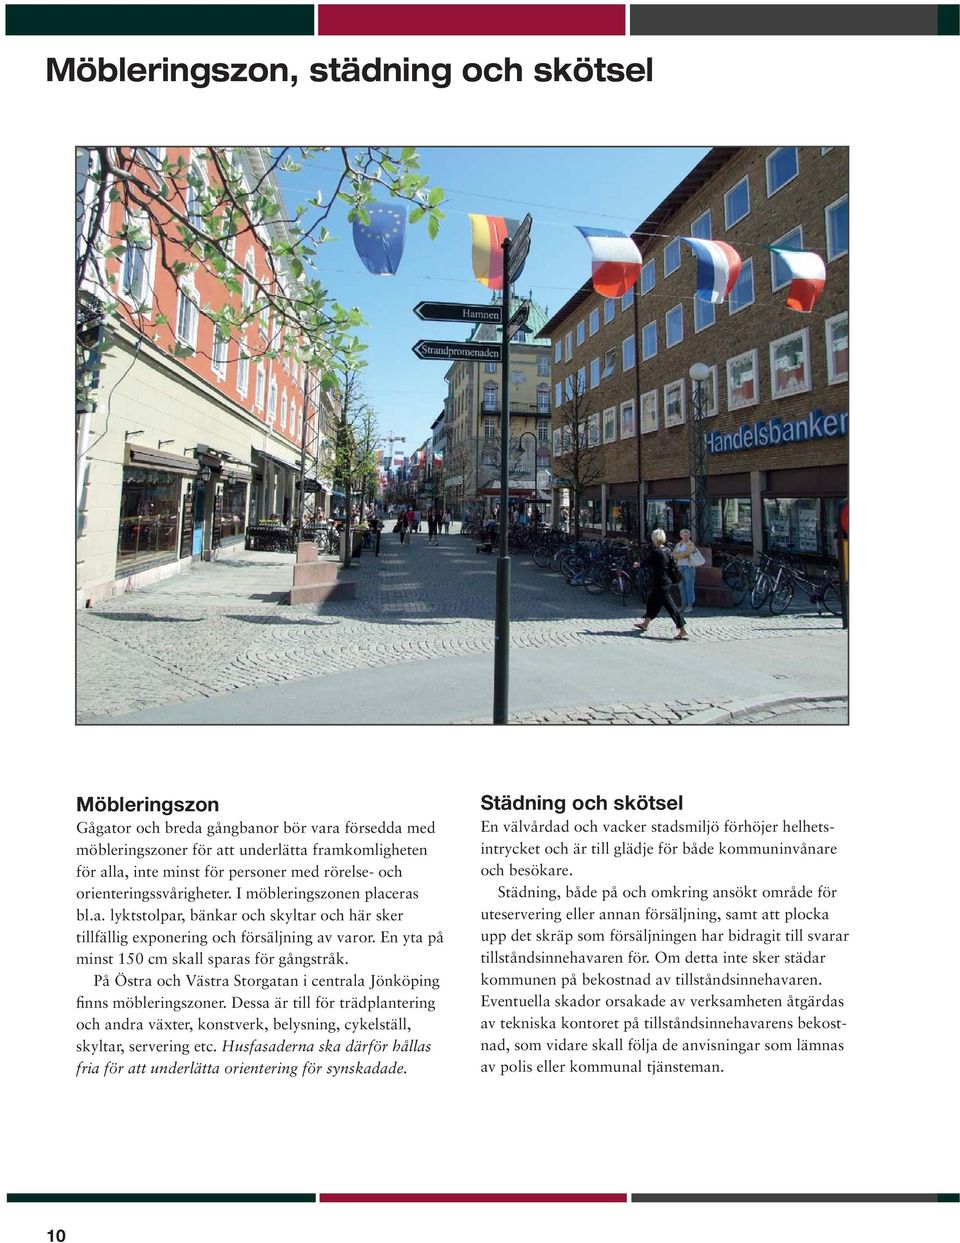 En yta på minst 150 cm skall sparas för gångstråk. På Östra och Västra Storgatan i centrala Jönköping finns möbleringszoner.